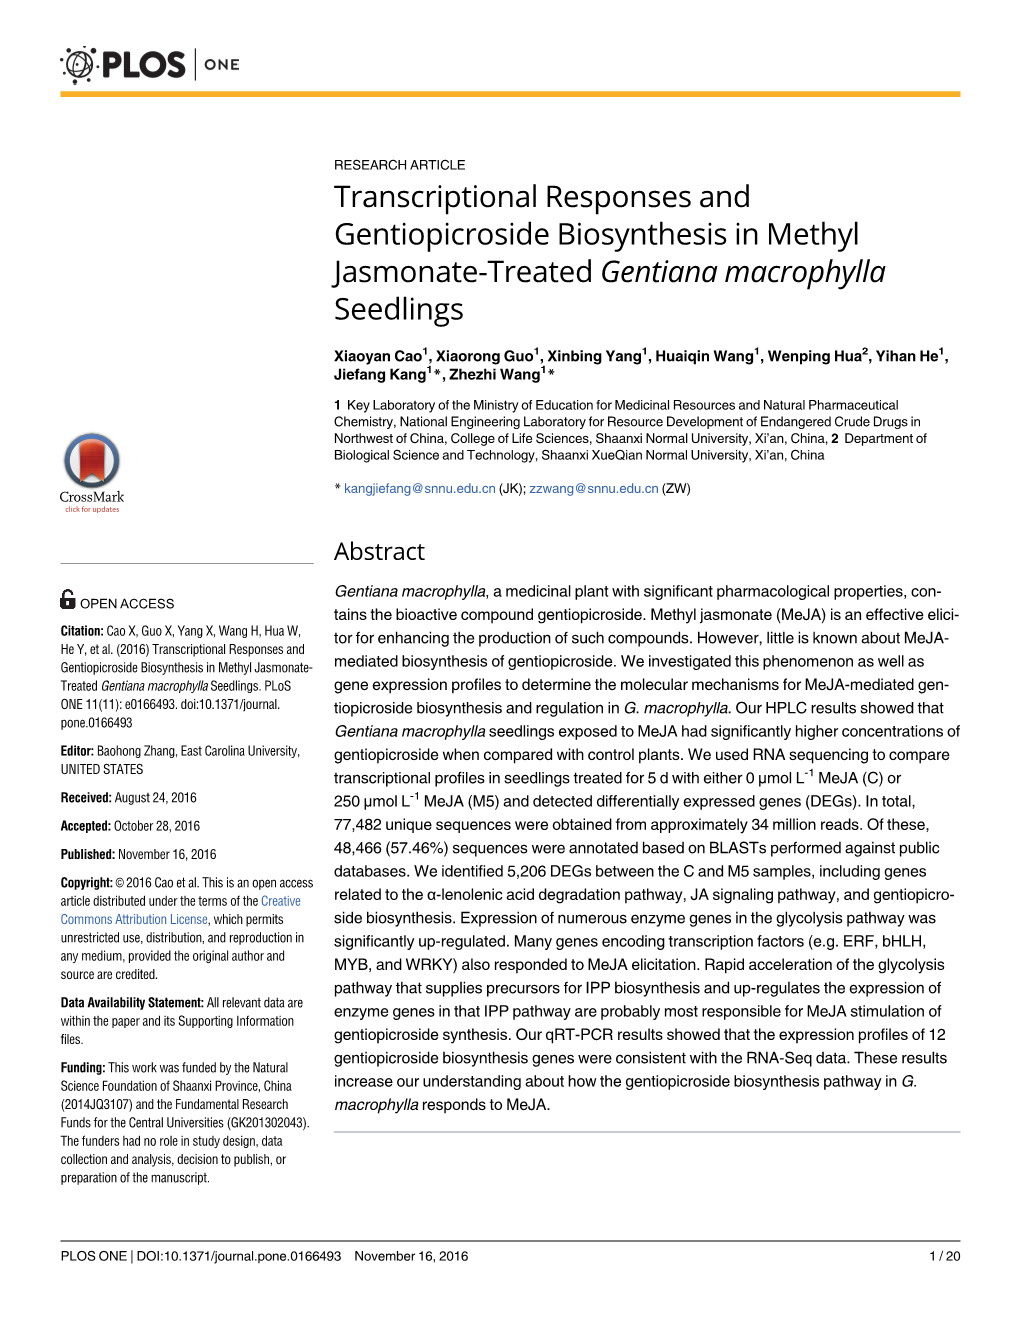 Transcriptional Responses and Gentiopicroside Biosynthesis in Methyl Jasmonate-Treated Gentiana Macrophylla Seedlings